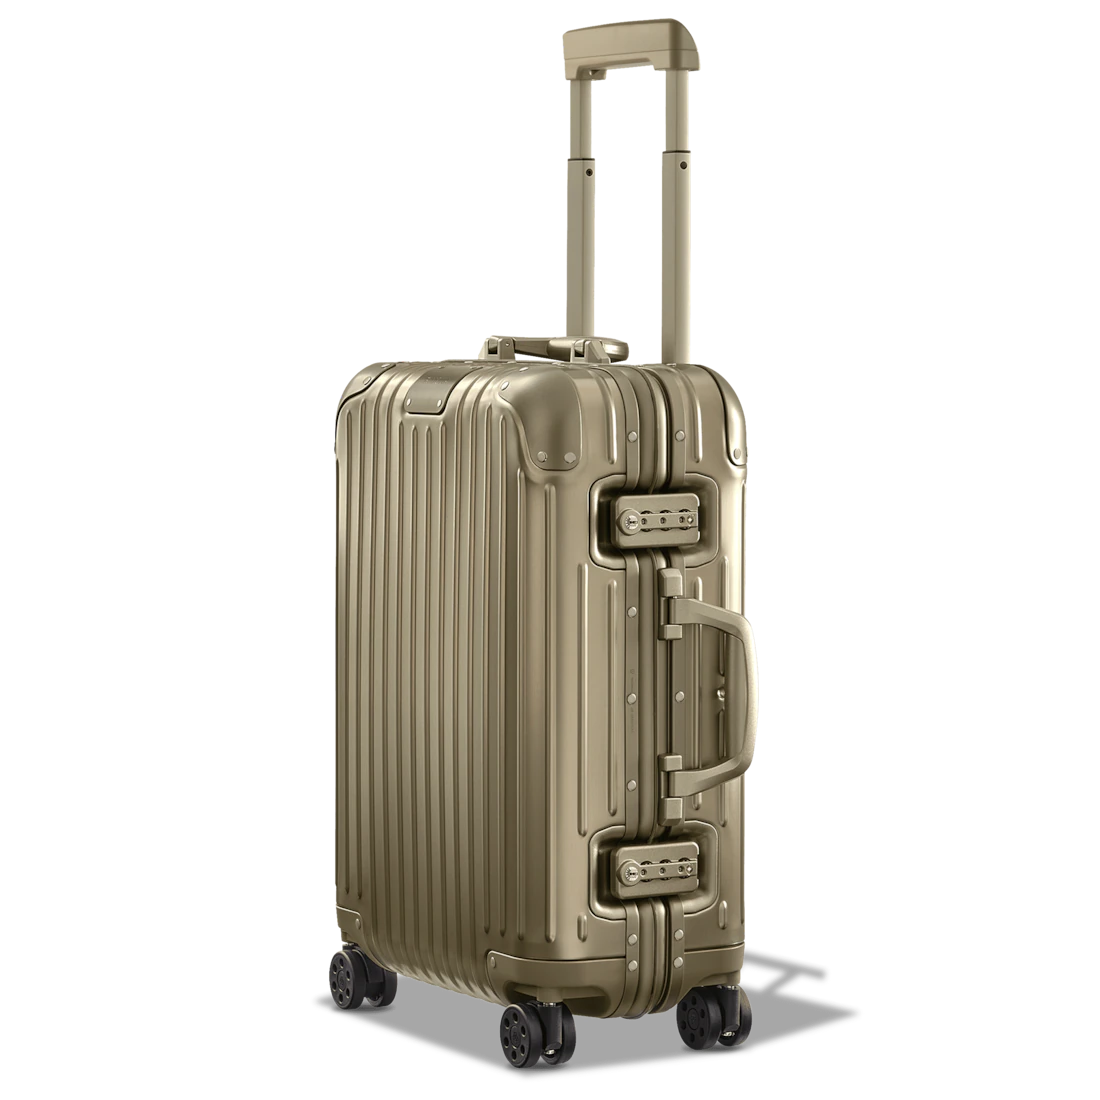 リモワのスーツケースのおすすめ商品比較表